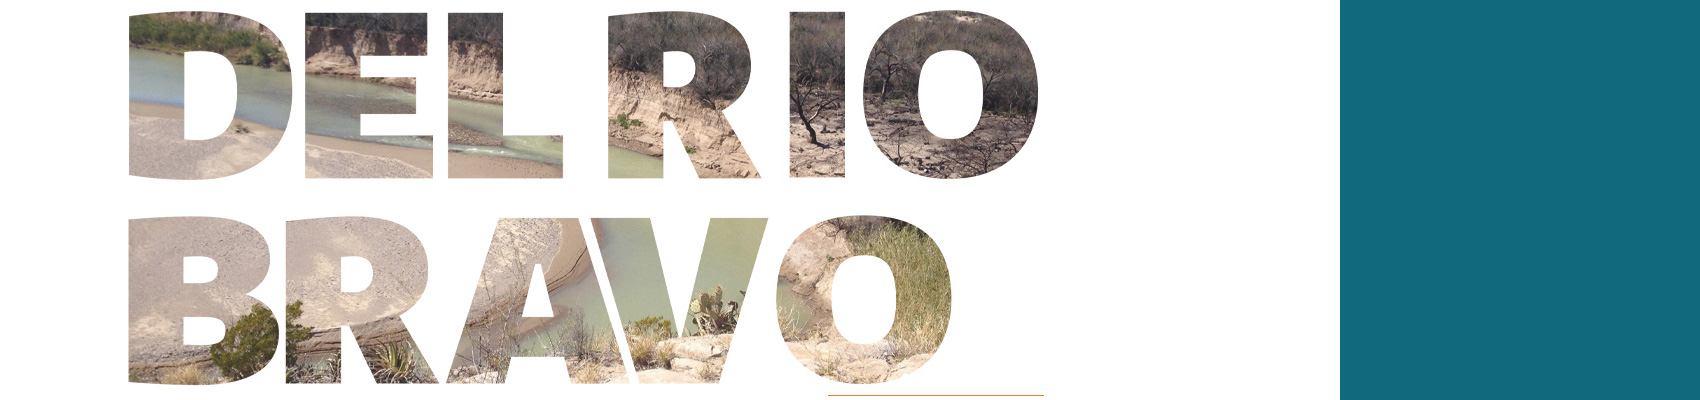 Perspectiva actual y futura de los recursos hídricos en la cuenca del río Bravo